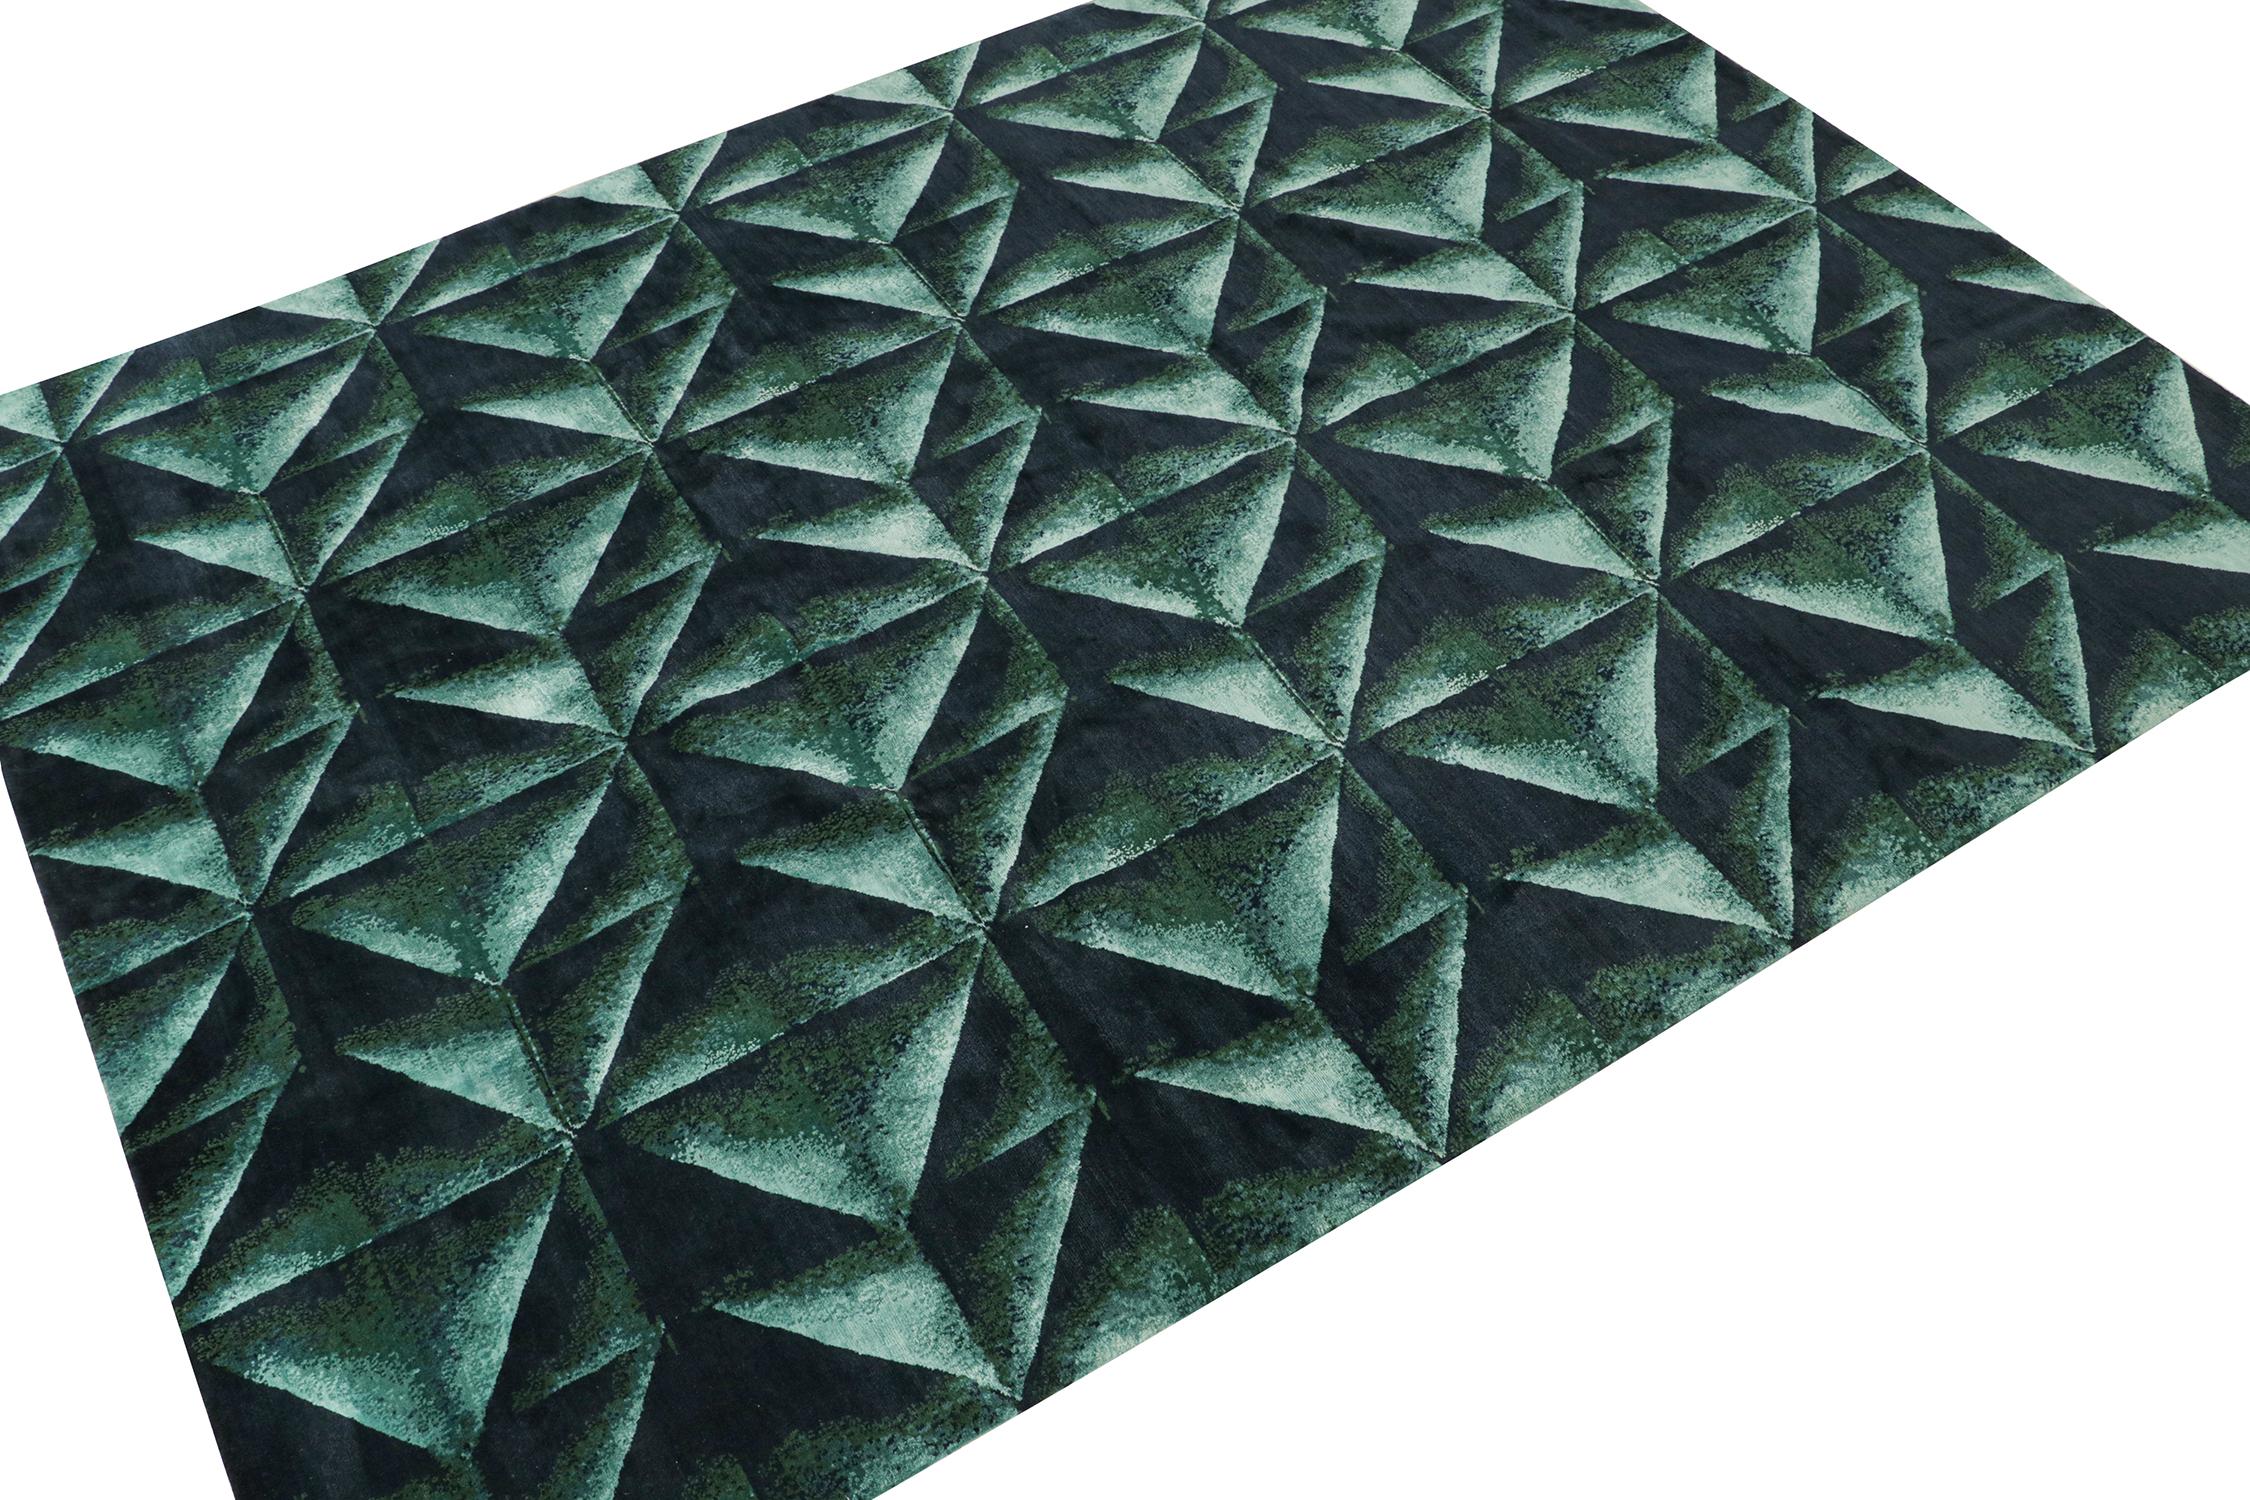 Dieser abstrakte Teppich im Format 9x12 ist die nächste Ergänzung zu den kühnen modernen Teppichdesigns von Rug & Kilim. Handgeknüpft aus Wolle und Seide.

Weiter zum Design: 

Dieses Stück ist von Origami-Designs inspiriert und zeigt ein